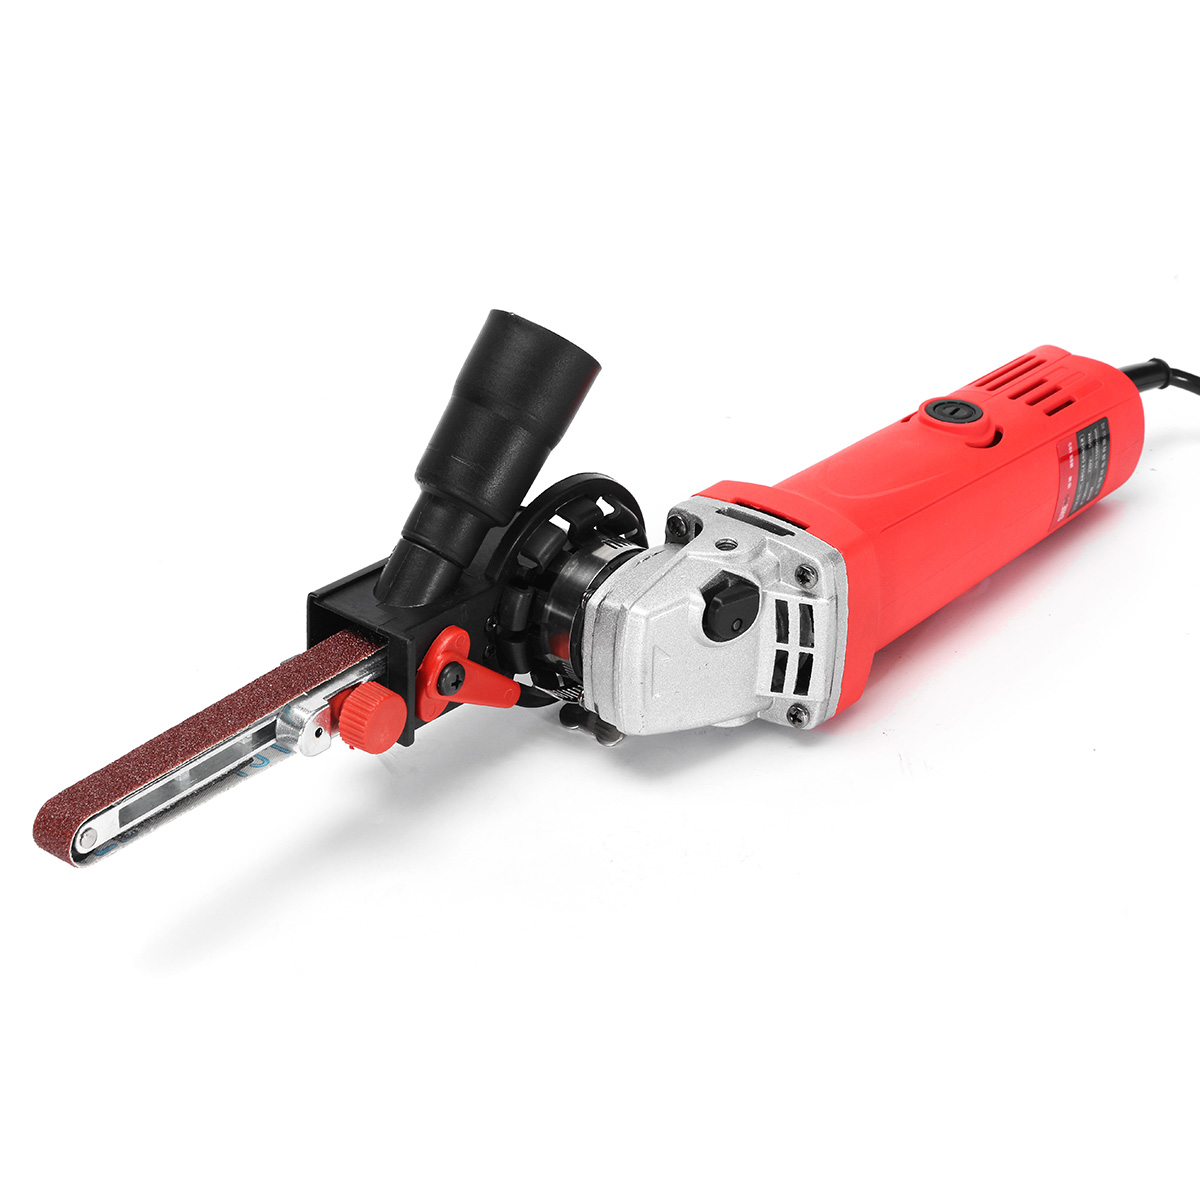 Drillpro-DIY-Sander-Sanding-Belt-Adapter-For-100mm-4-Inch-Electric-Angle-Grinder-1243680-10